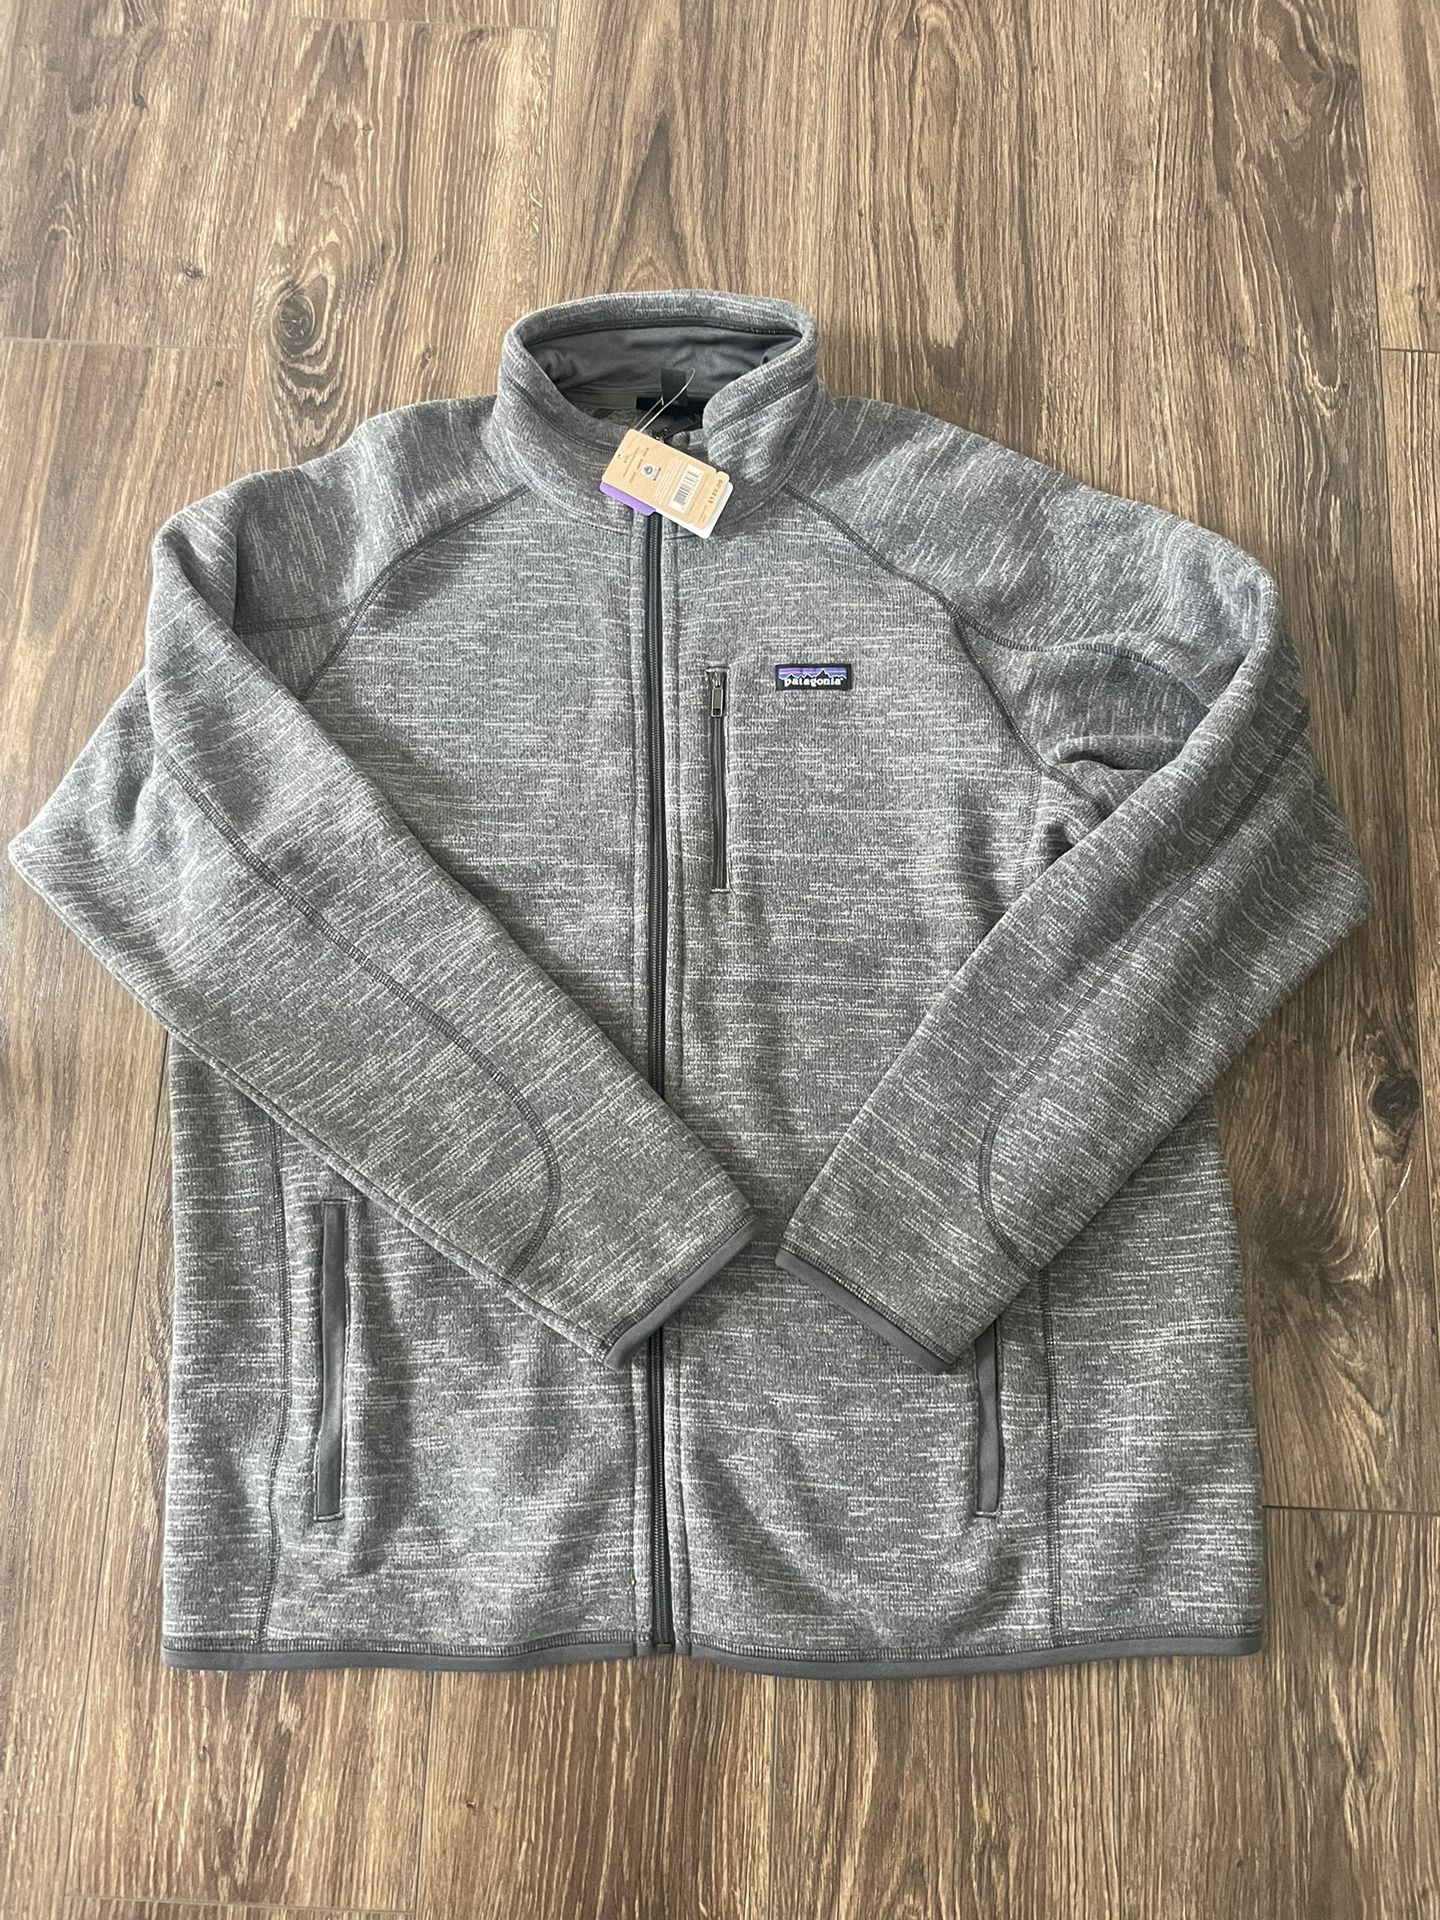 Facebook Patagonia Sweater Jacket - XXL 